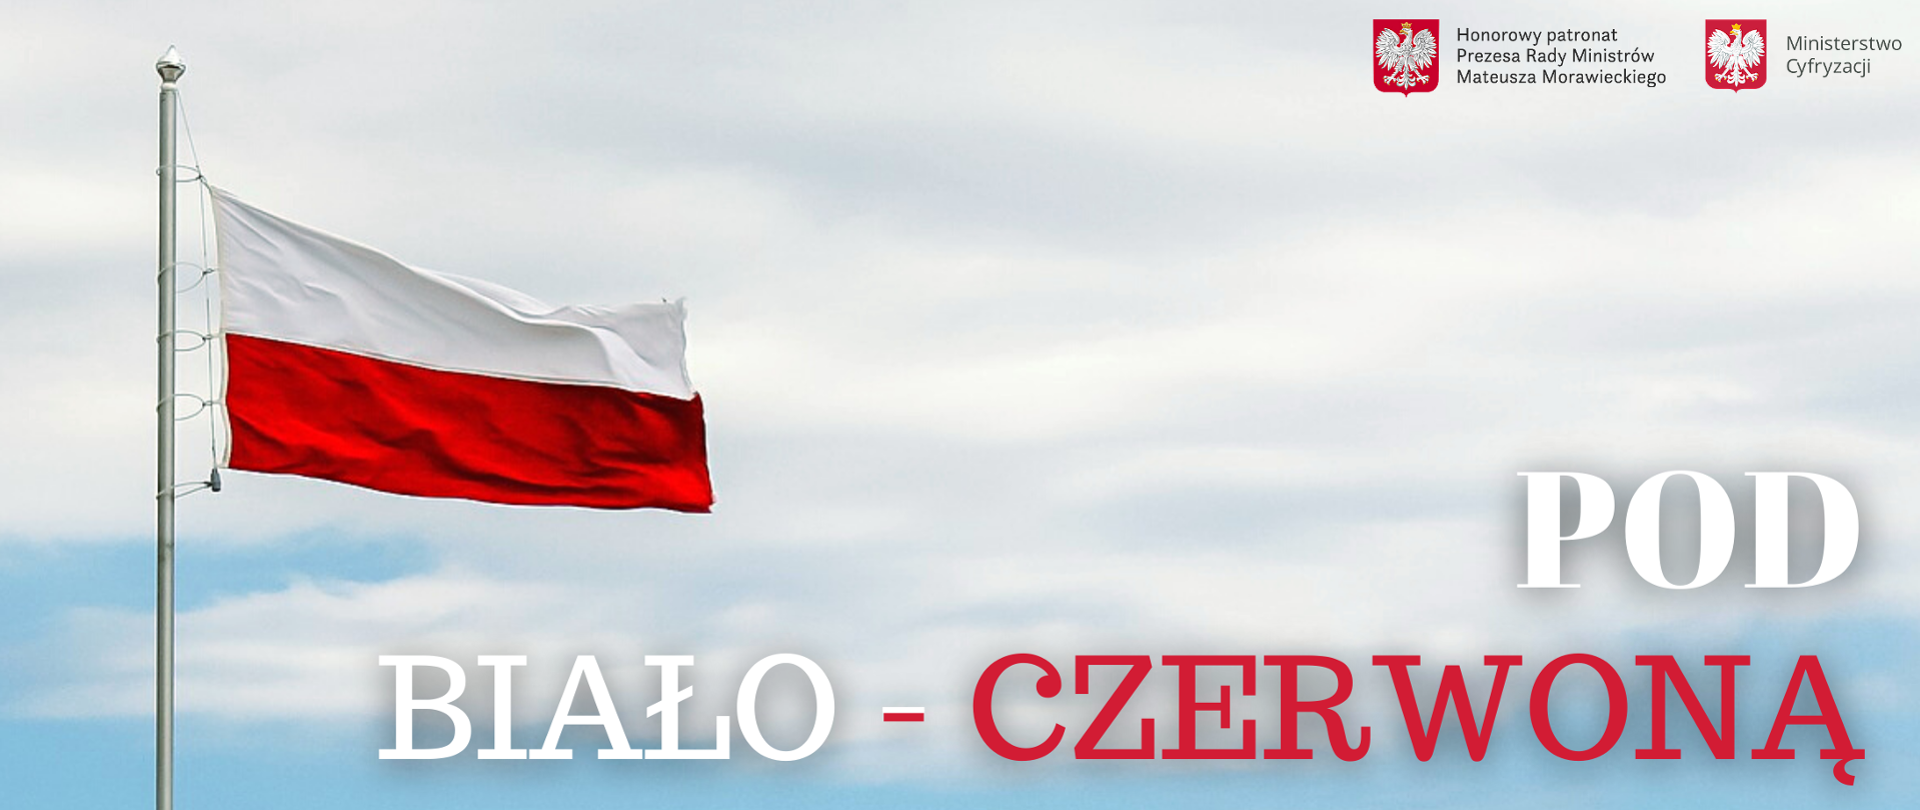 Flaga Polski na tle nieba, a obok napis "Pod biało-czerwoną"